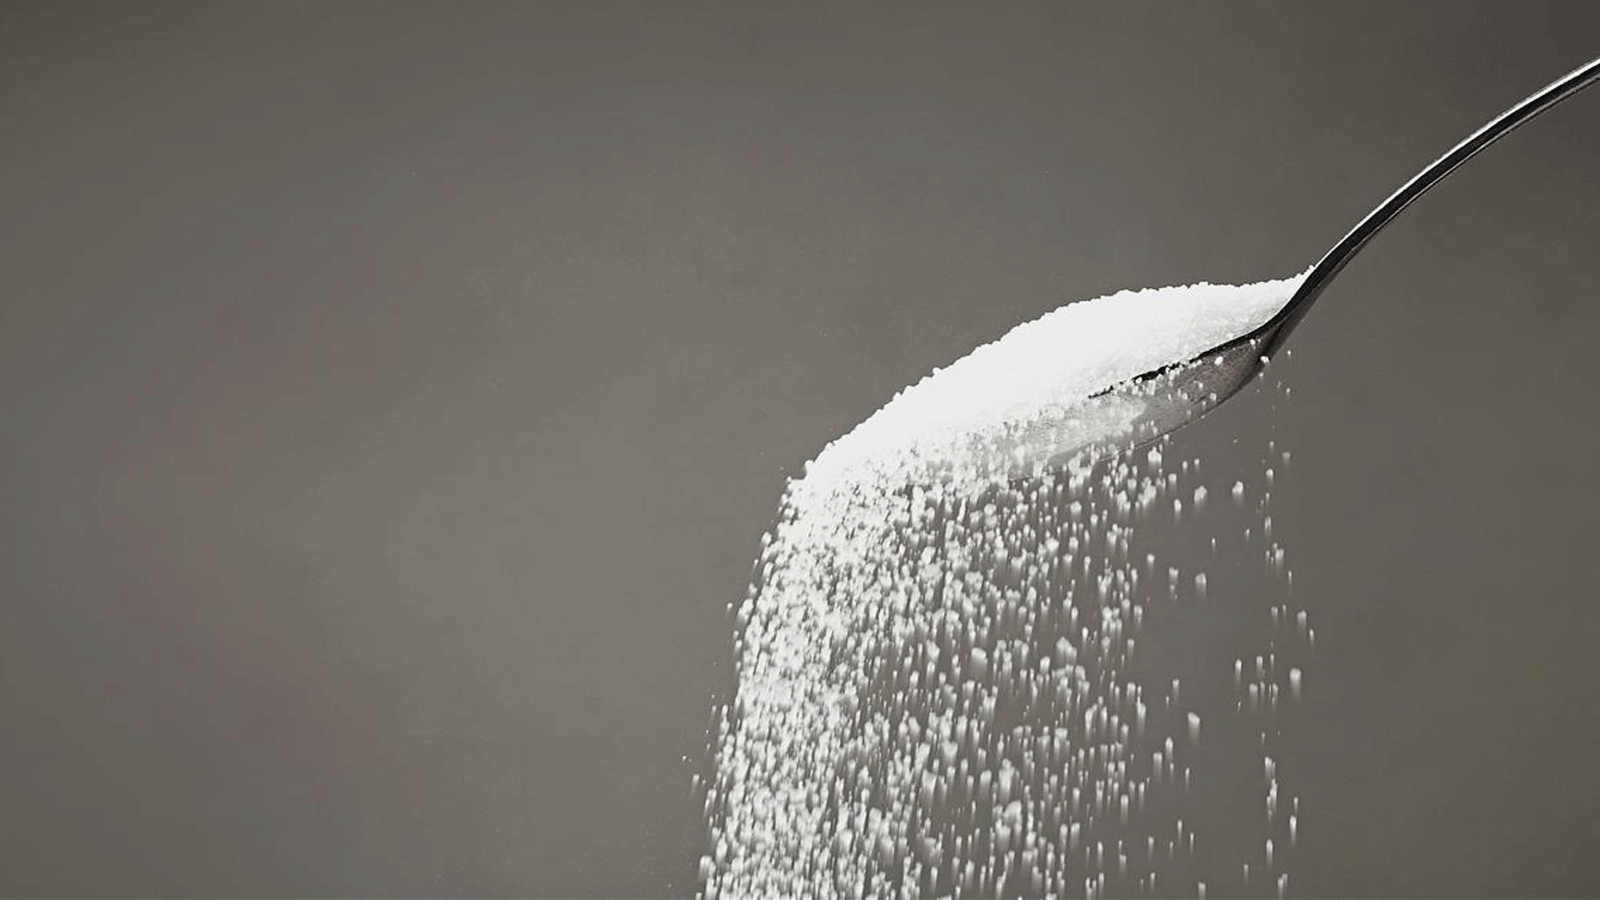 استبدال السكر بالمُحليات الاصطناعية قد لا يكون صحيًا 